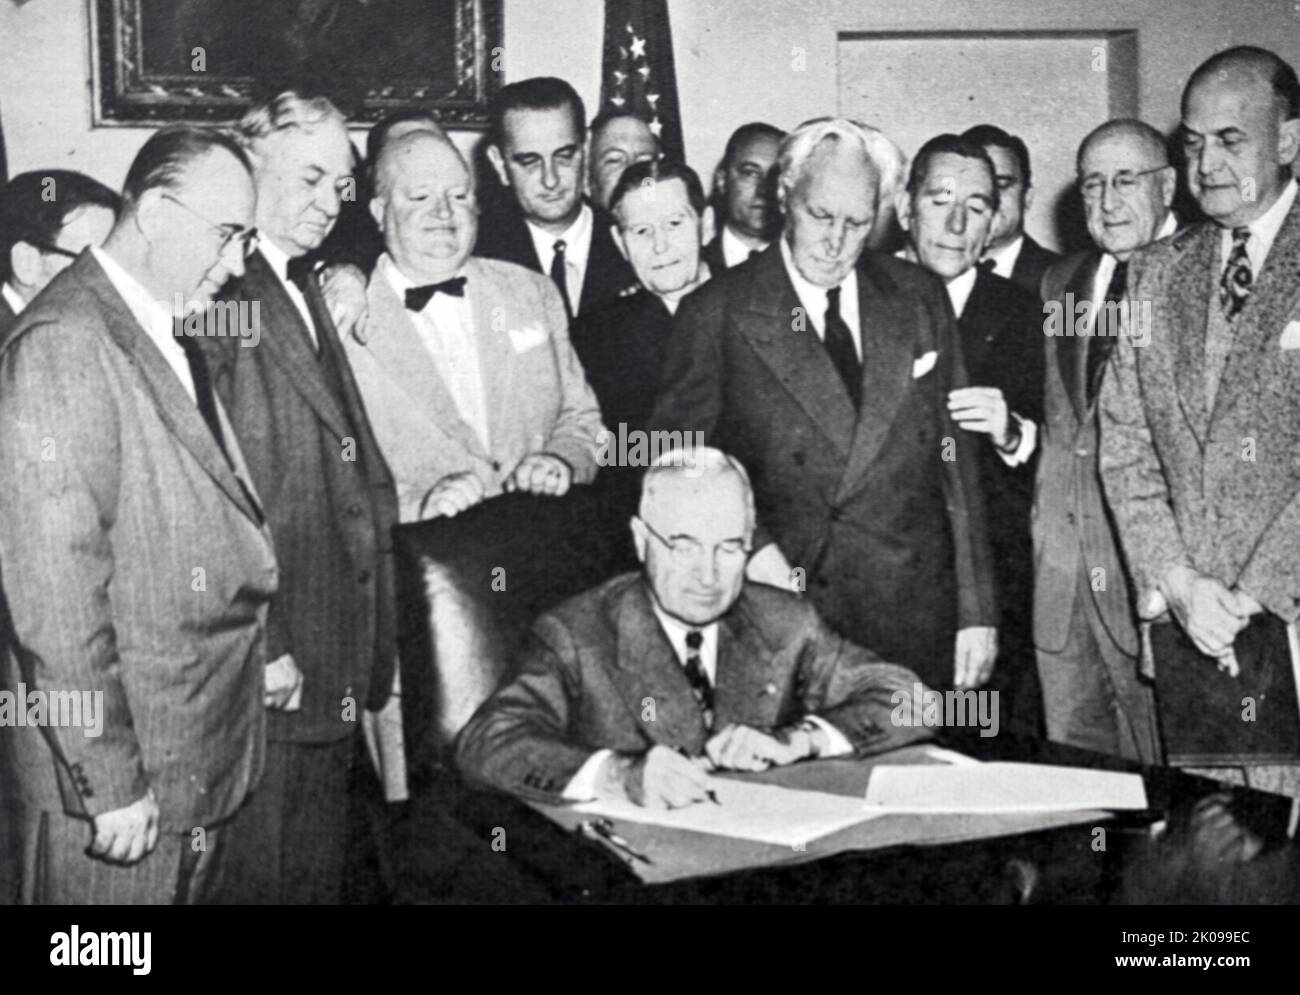 Präsident Truman unterzeichnet den Rechtshilfeakt von 1949 im Kabinettsaal des Weißen Hauses. Harry S. Truman (8. Mai 1884 - 26. Dezember 1972) war der Präsident der Vereinigten Staaten von 33., der von 1945 bis 1953 diente. Als lebenslanges Mitglied der Demokratischen Partei diente er zuvor von Januar bis April 1945 unter Franklin Roosevelt als Vizepräsident von 34. und von 1935 bis Januar 1945 als Senator der Vereinigten Staaten von Missouri. Stockfoto